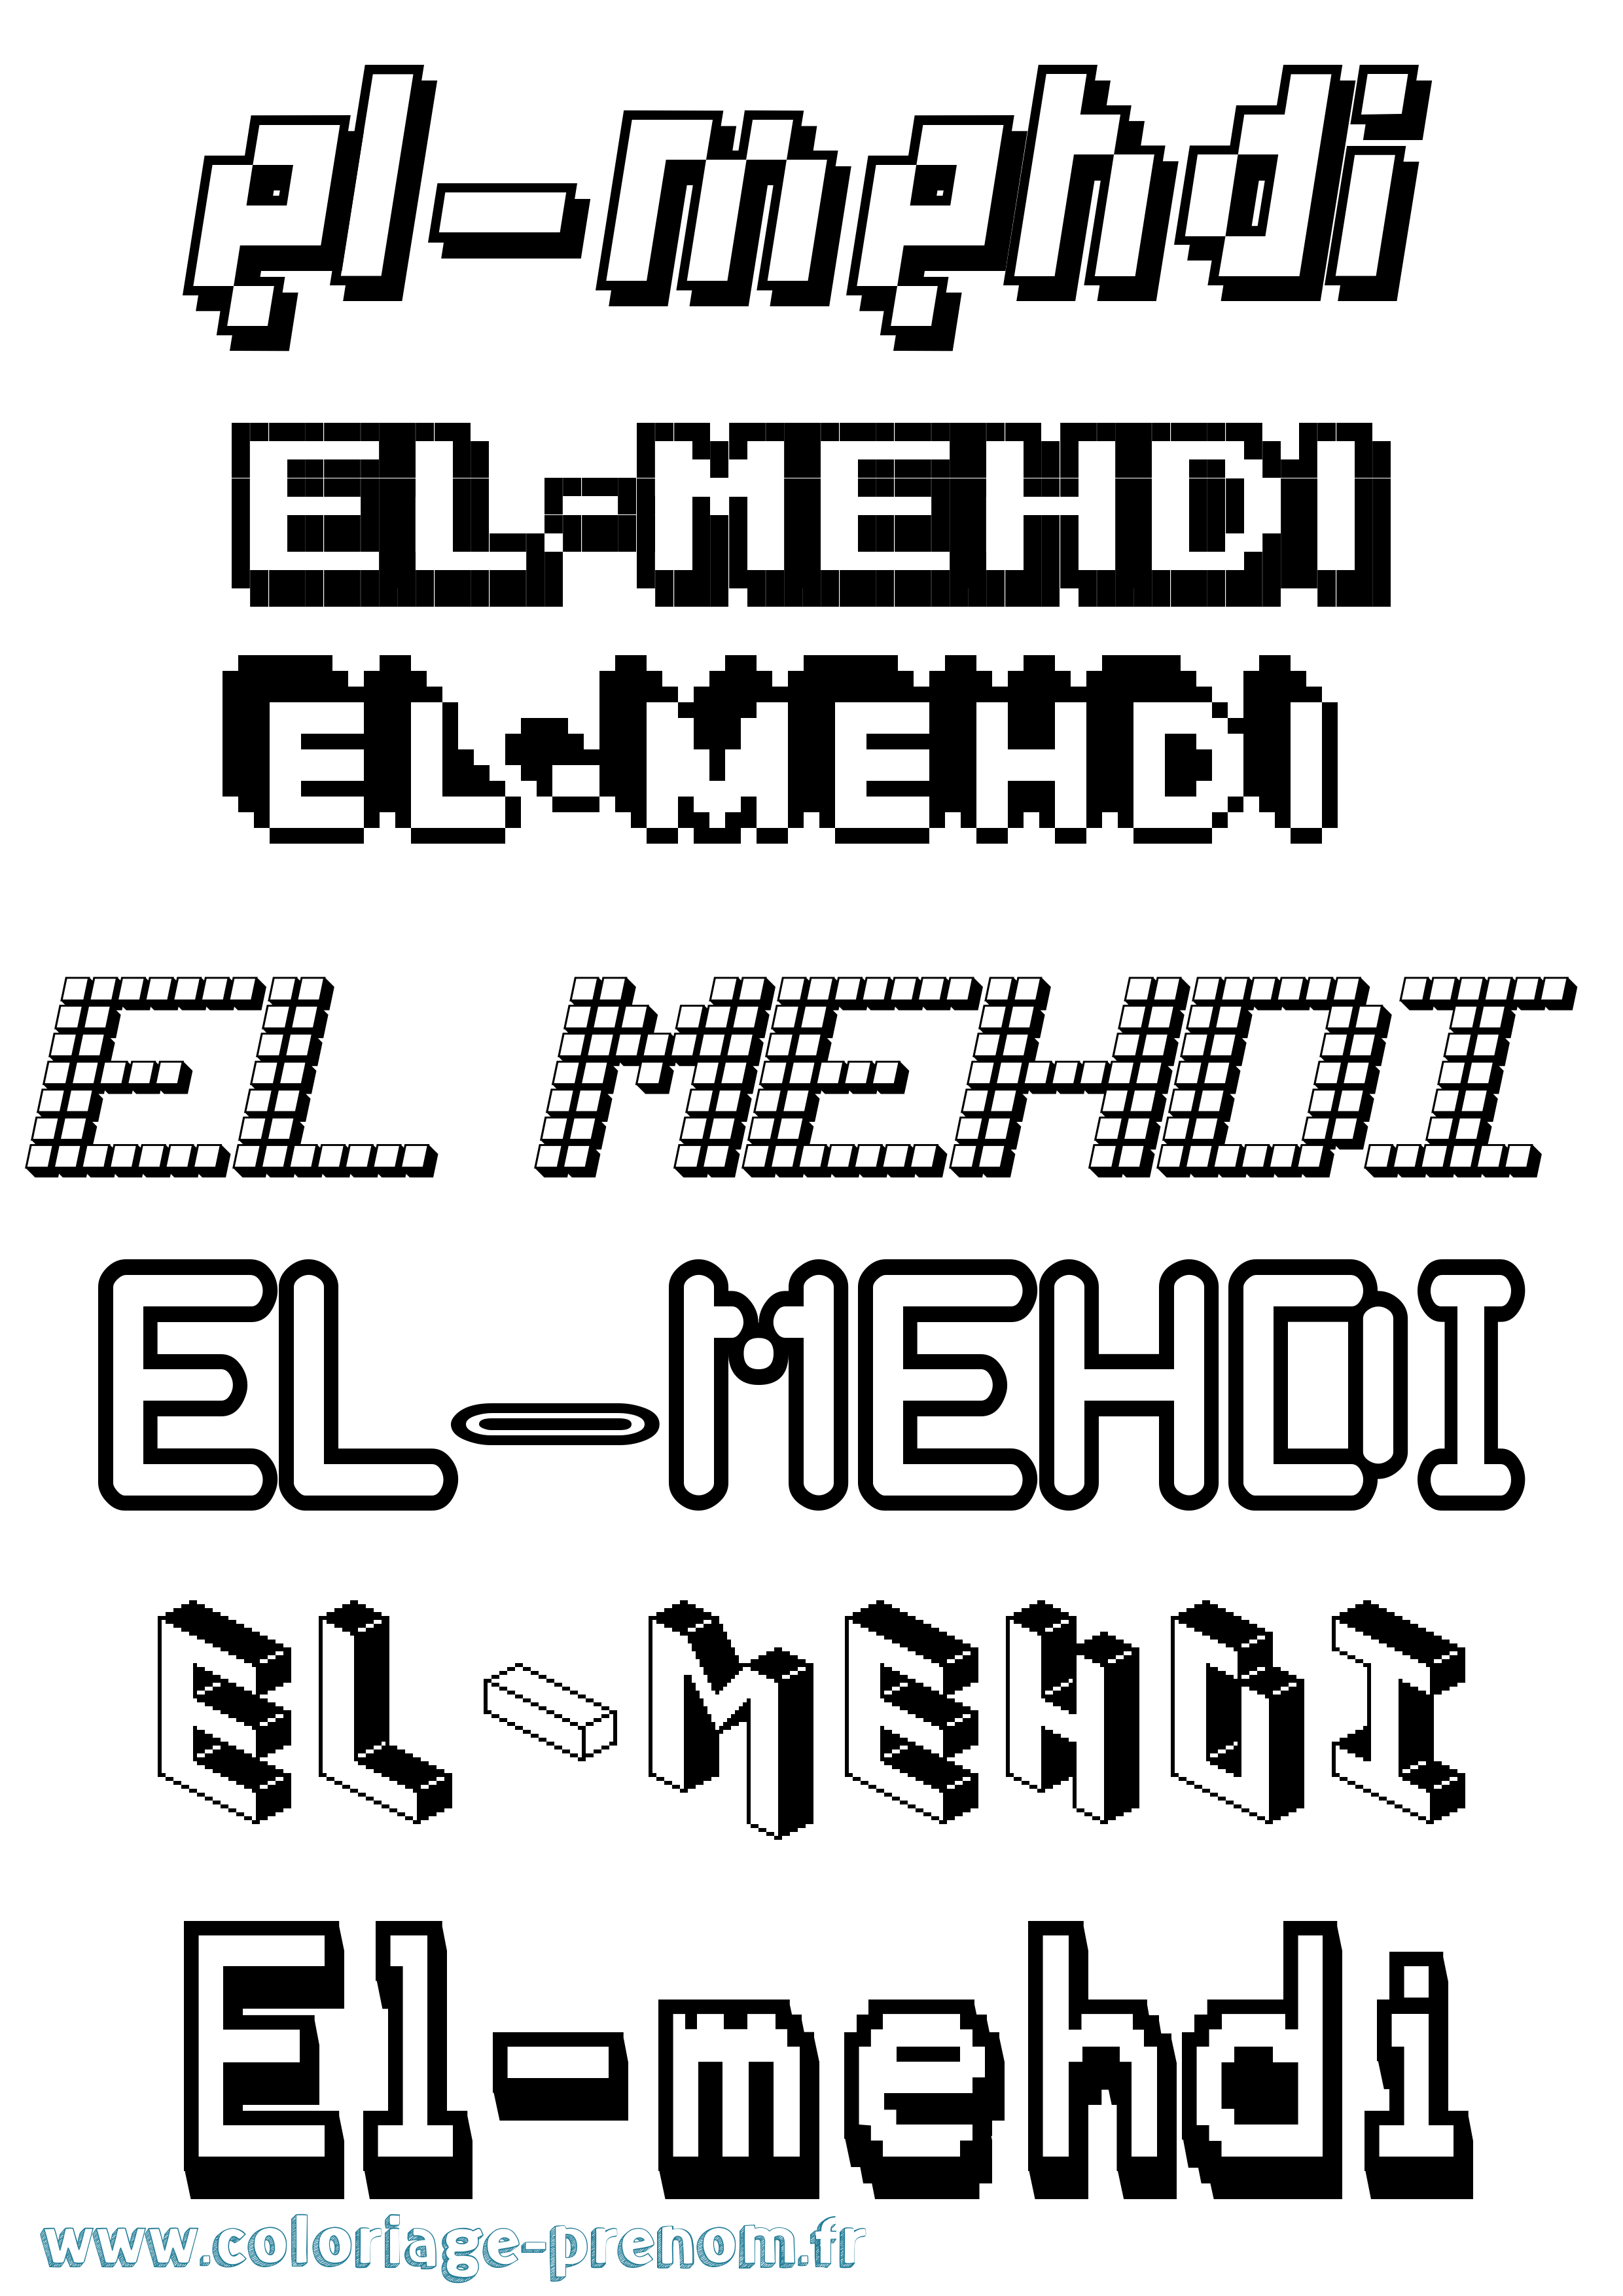 Coloriage prénom El-Mehdi Pixel